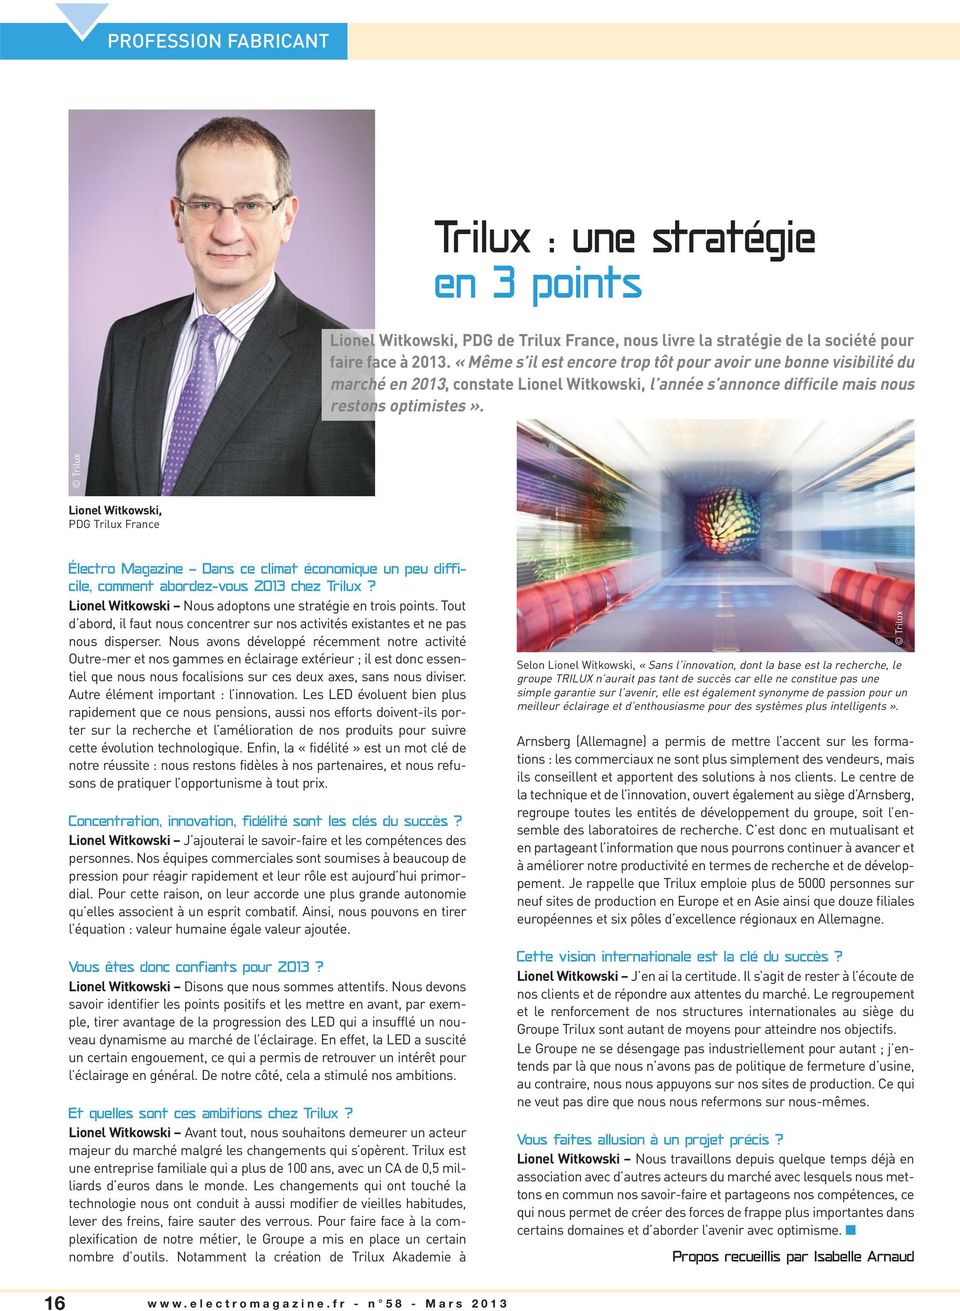 Trilux Lionel Witkowski, PDG Trilux France Électro Magazine Dans ce climat économique un peu difficile, comment abordez-vous 2013 chez Trilux?